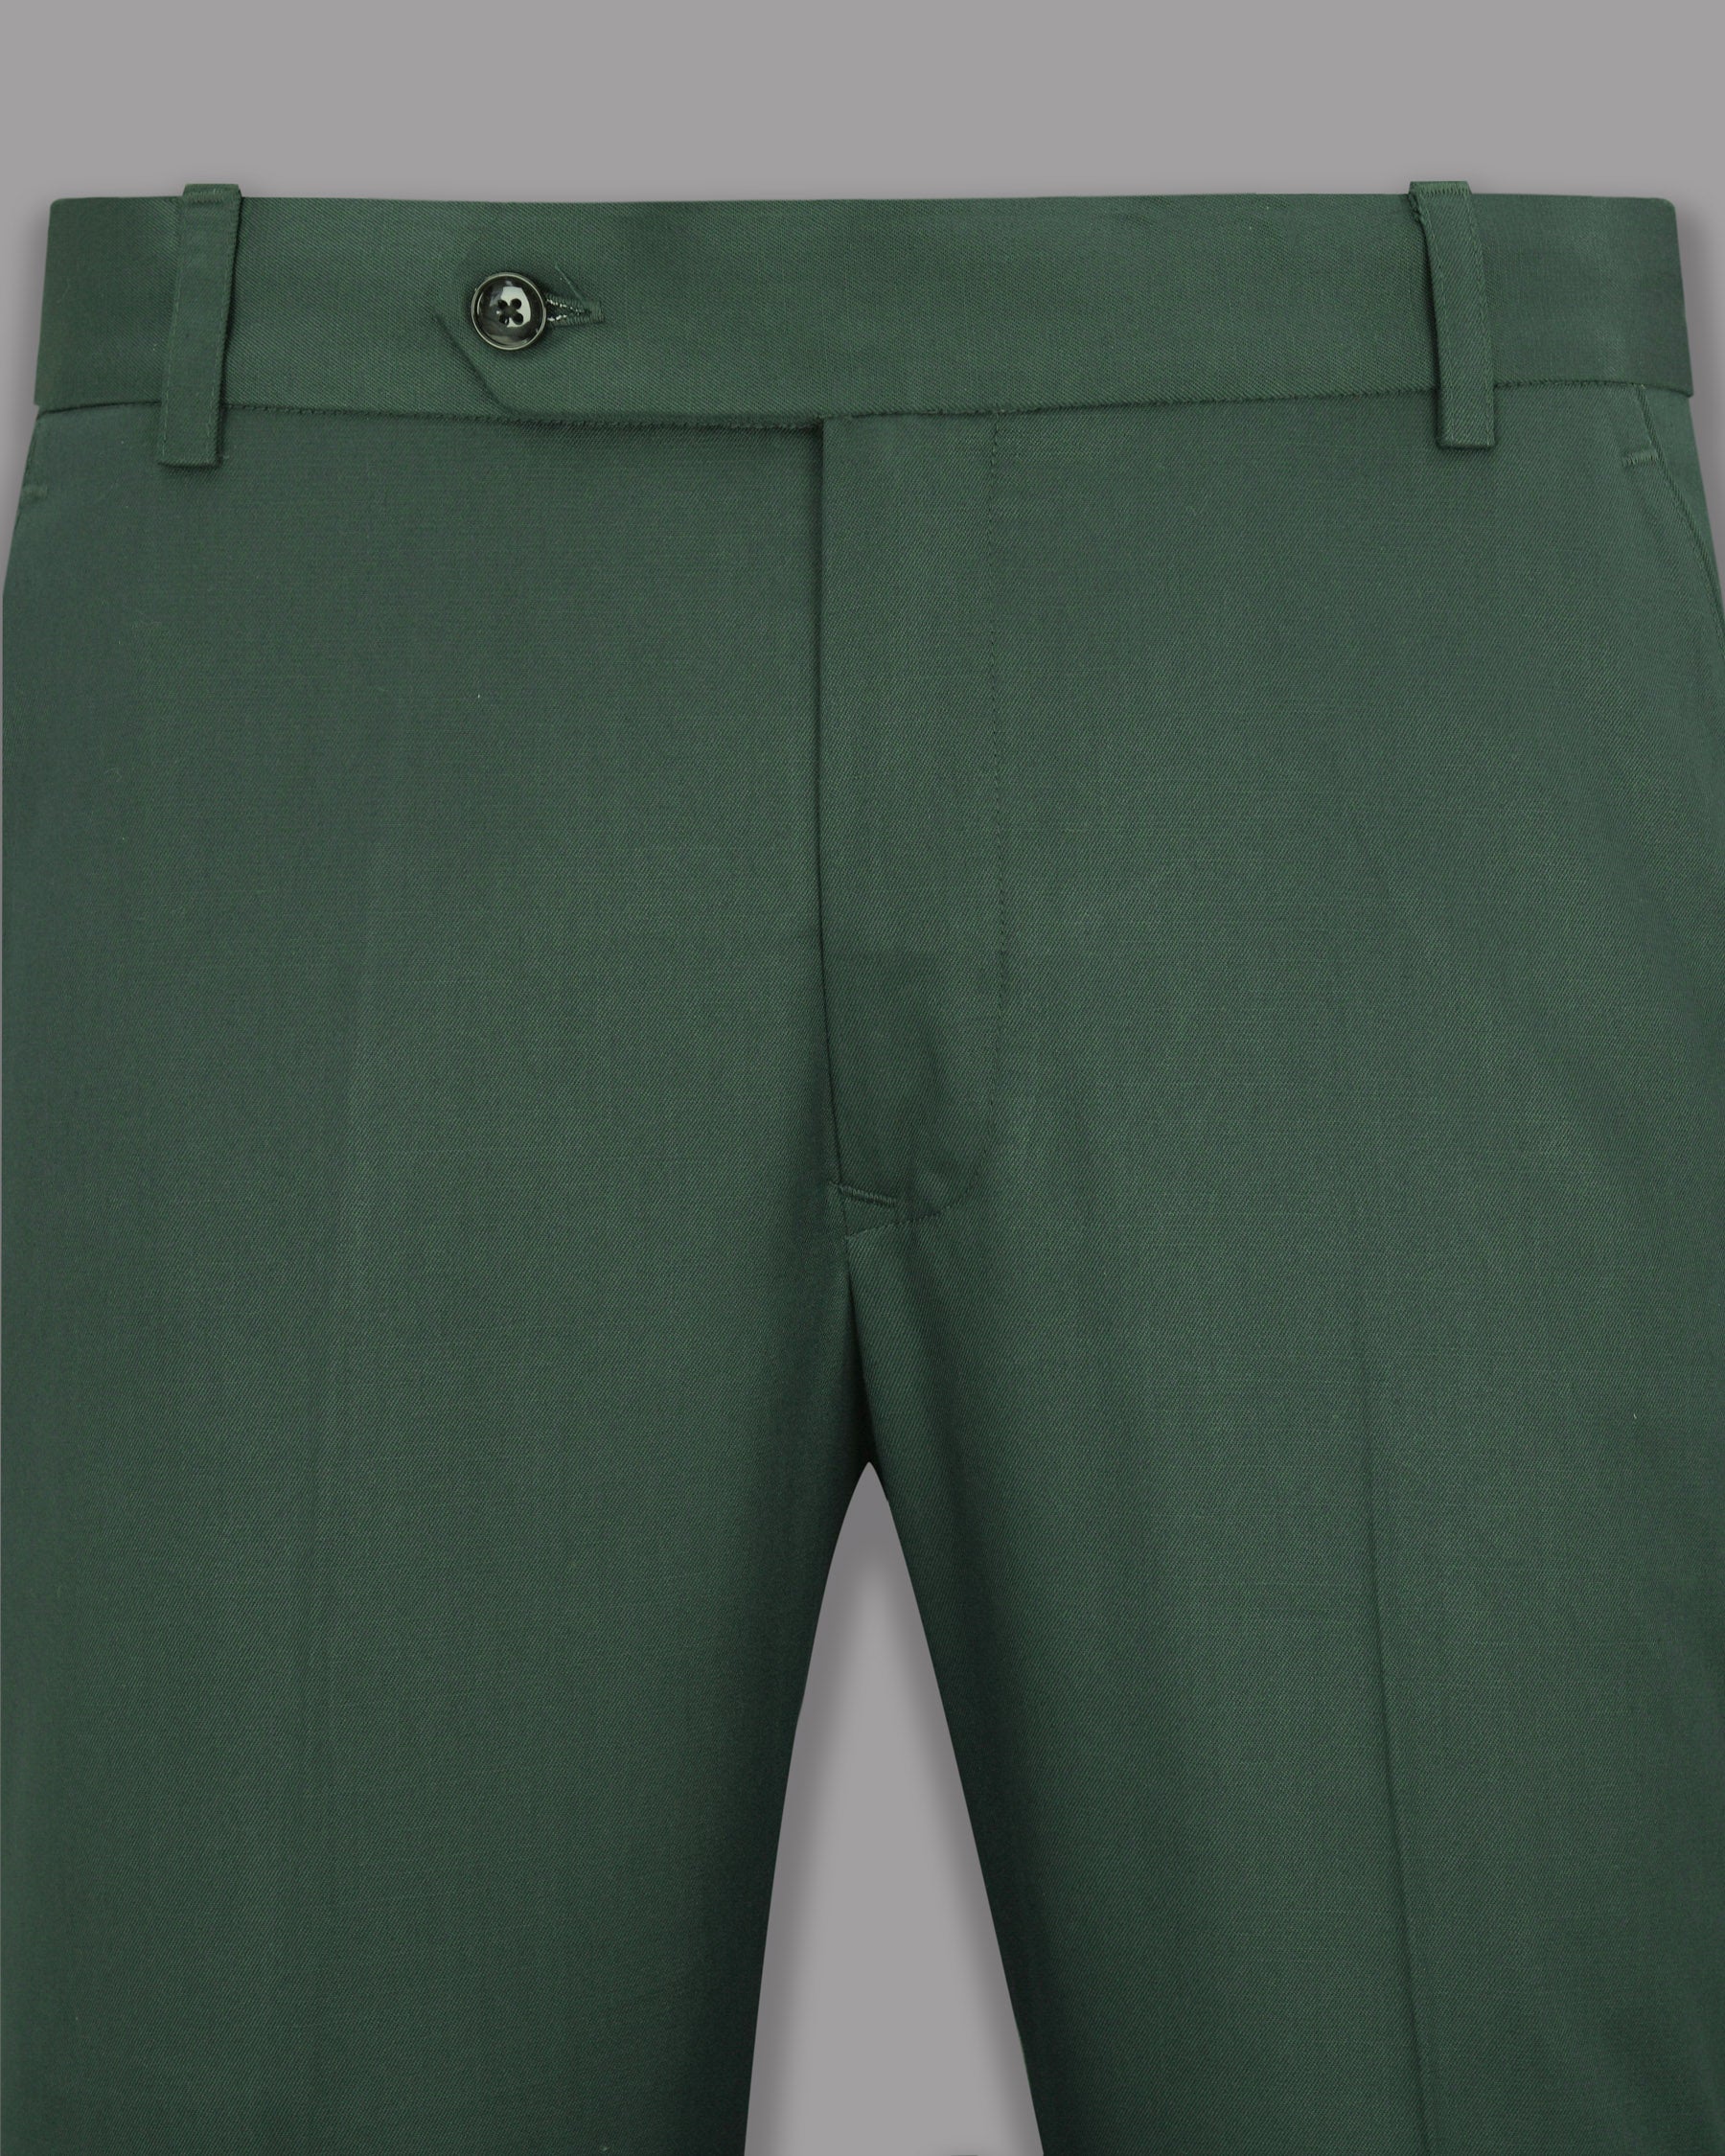 Outer Space Green Wool Rich Pant T1139-40, T1139-42, T1139-32, T1139-30, T1139-38, T1139-44, T1139-36, T1139-28, T1139-34